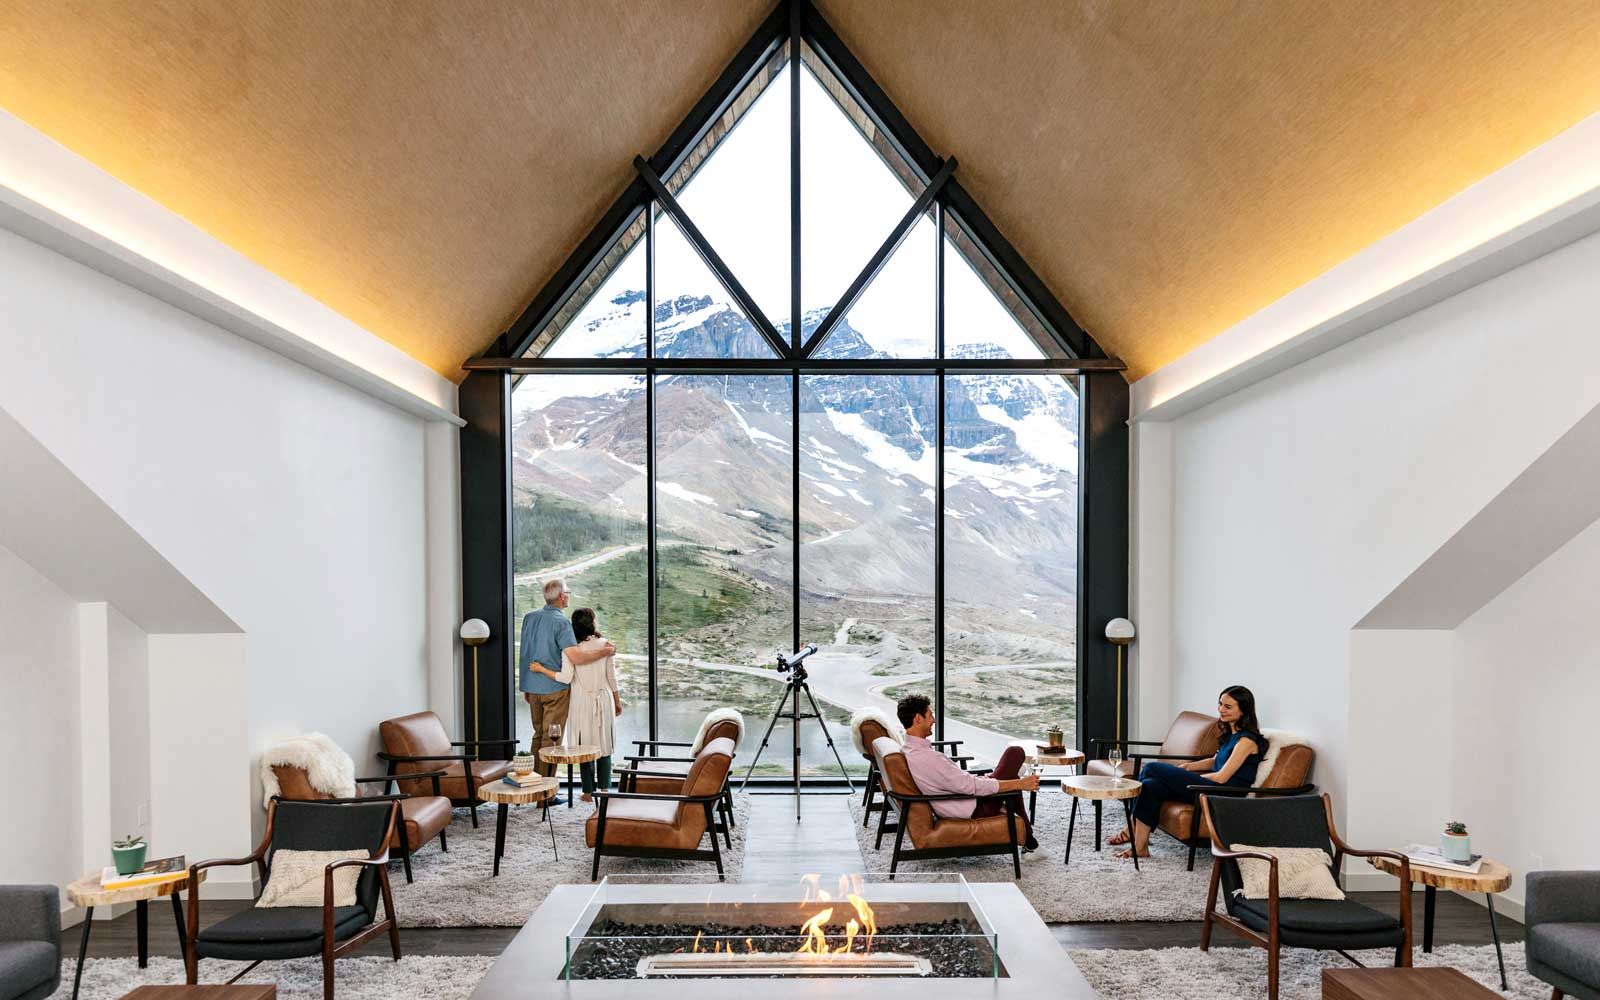 Wohnzimmer in der Glacier View Lodge, Jasper, Kanada